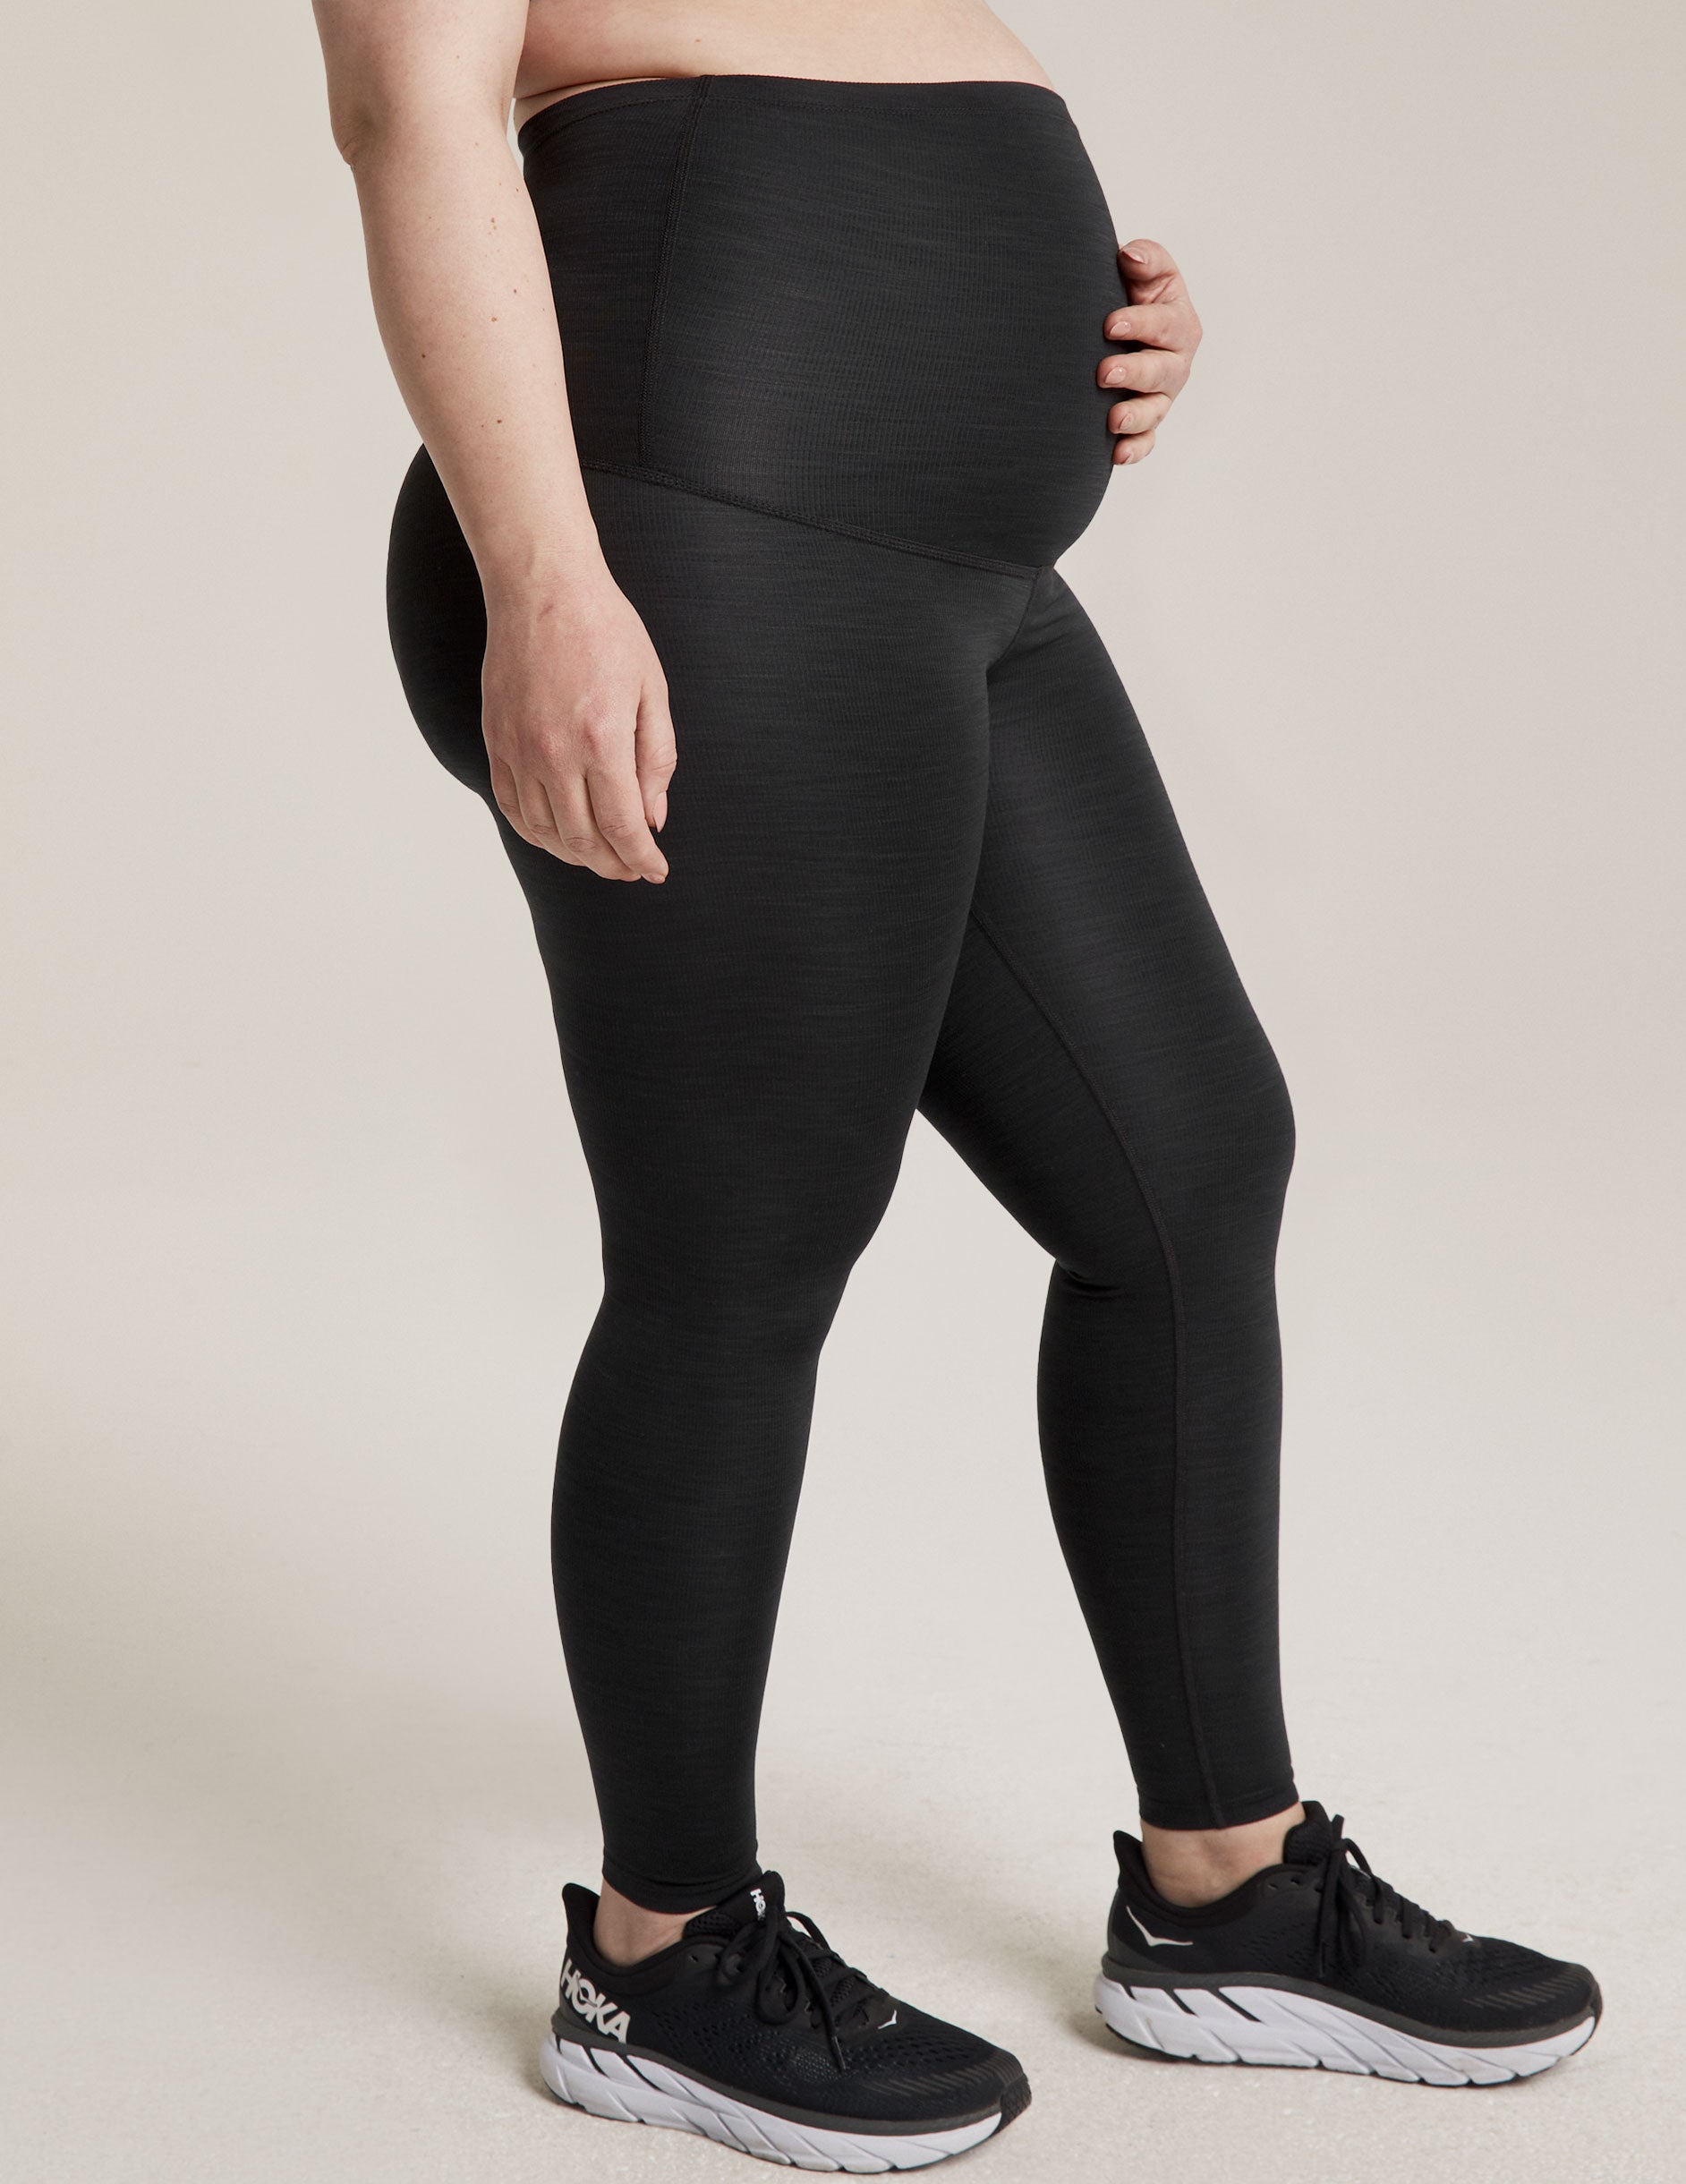 black maternity legging